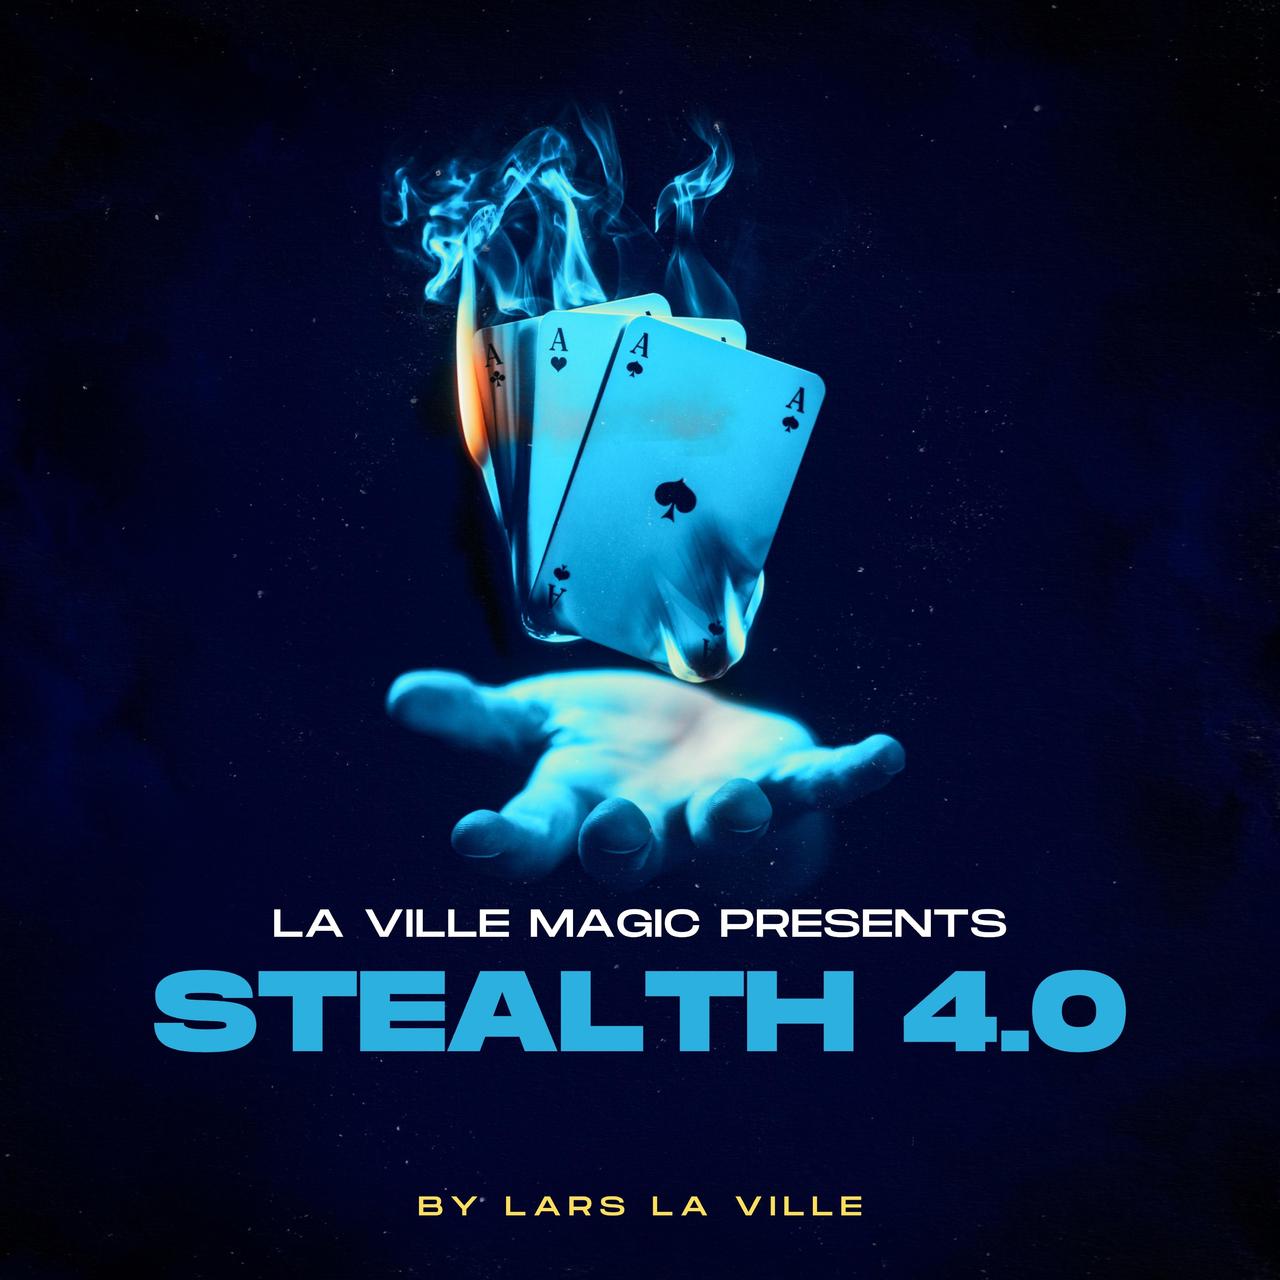 Stealth 4.0 by Lars La Ville / La Ville Magic (Mp4 Video Download)